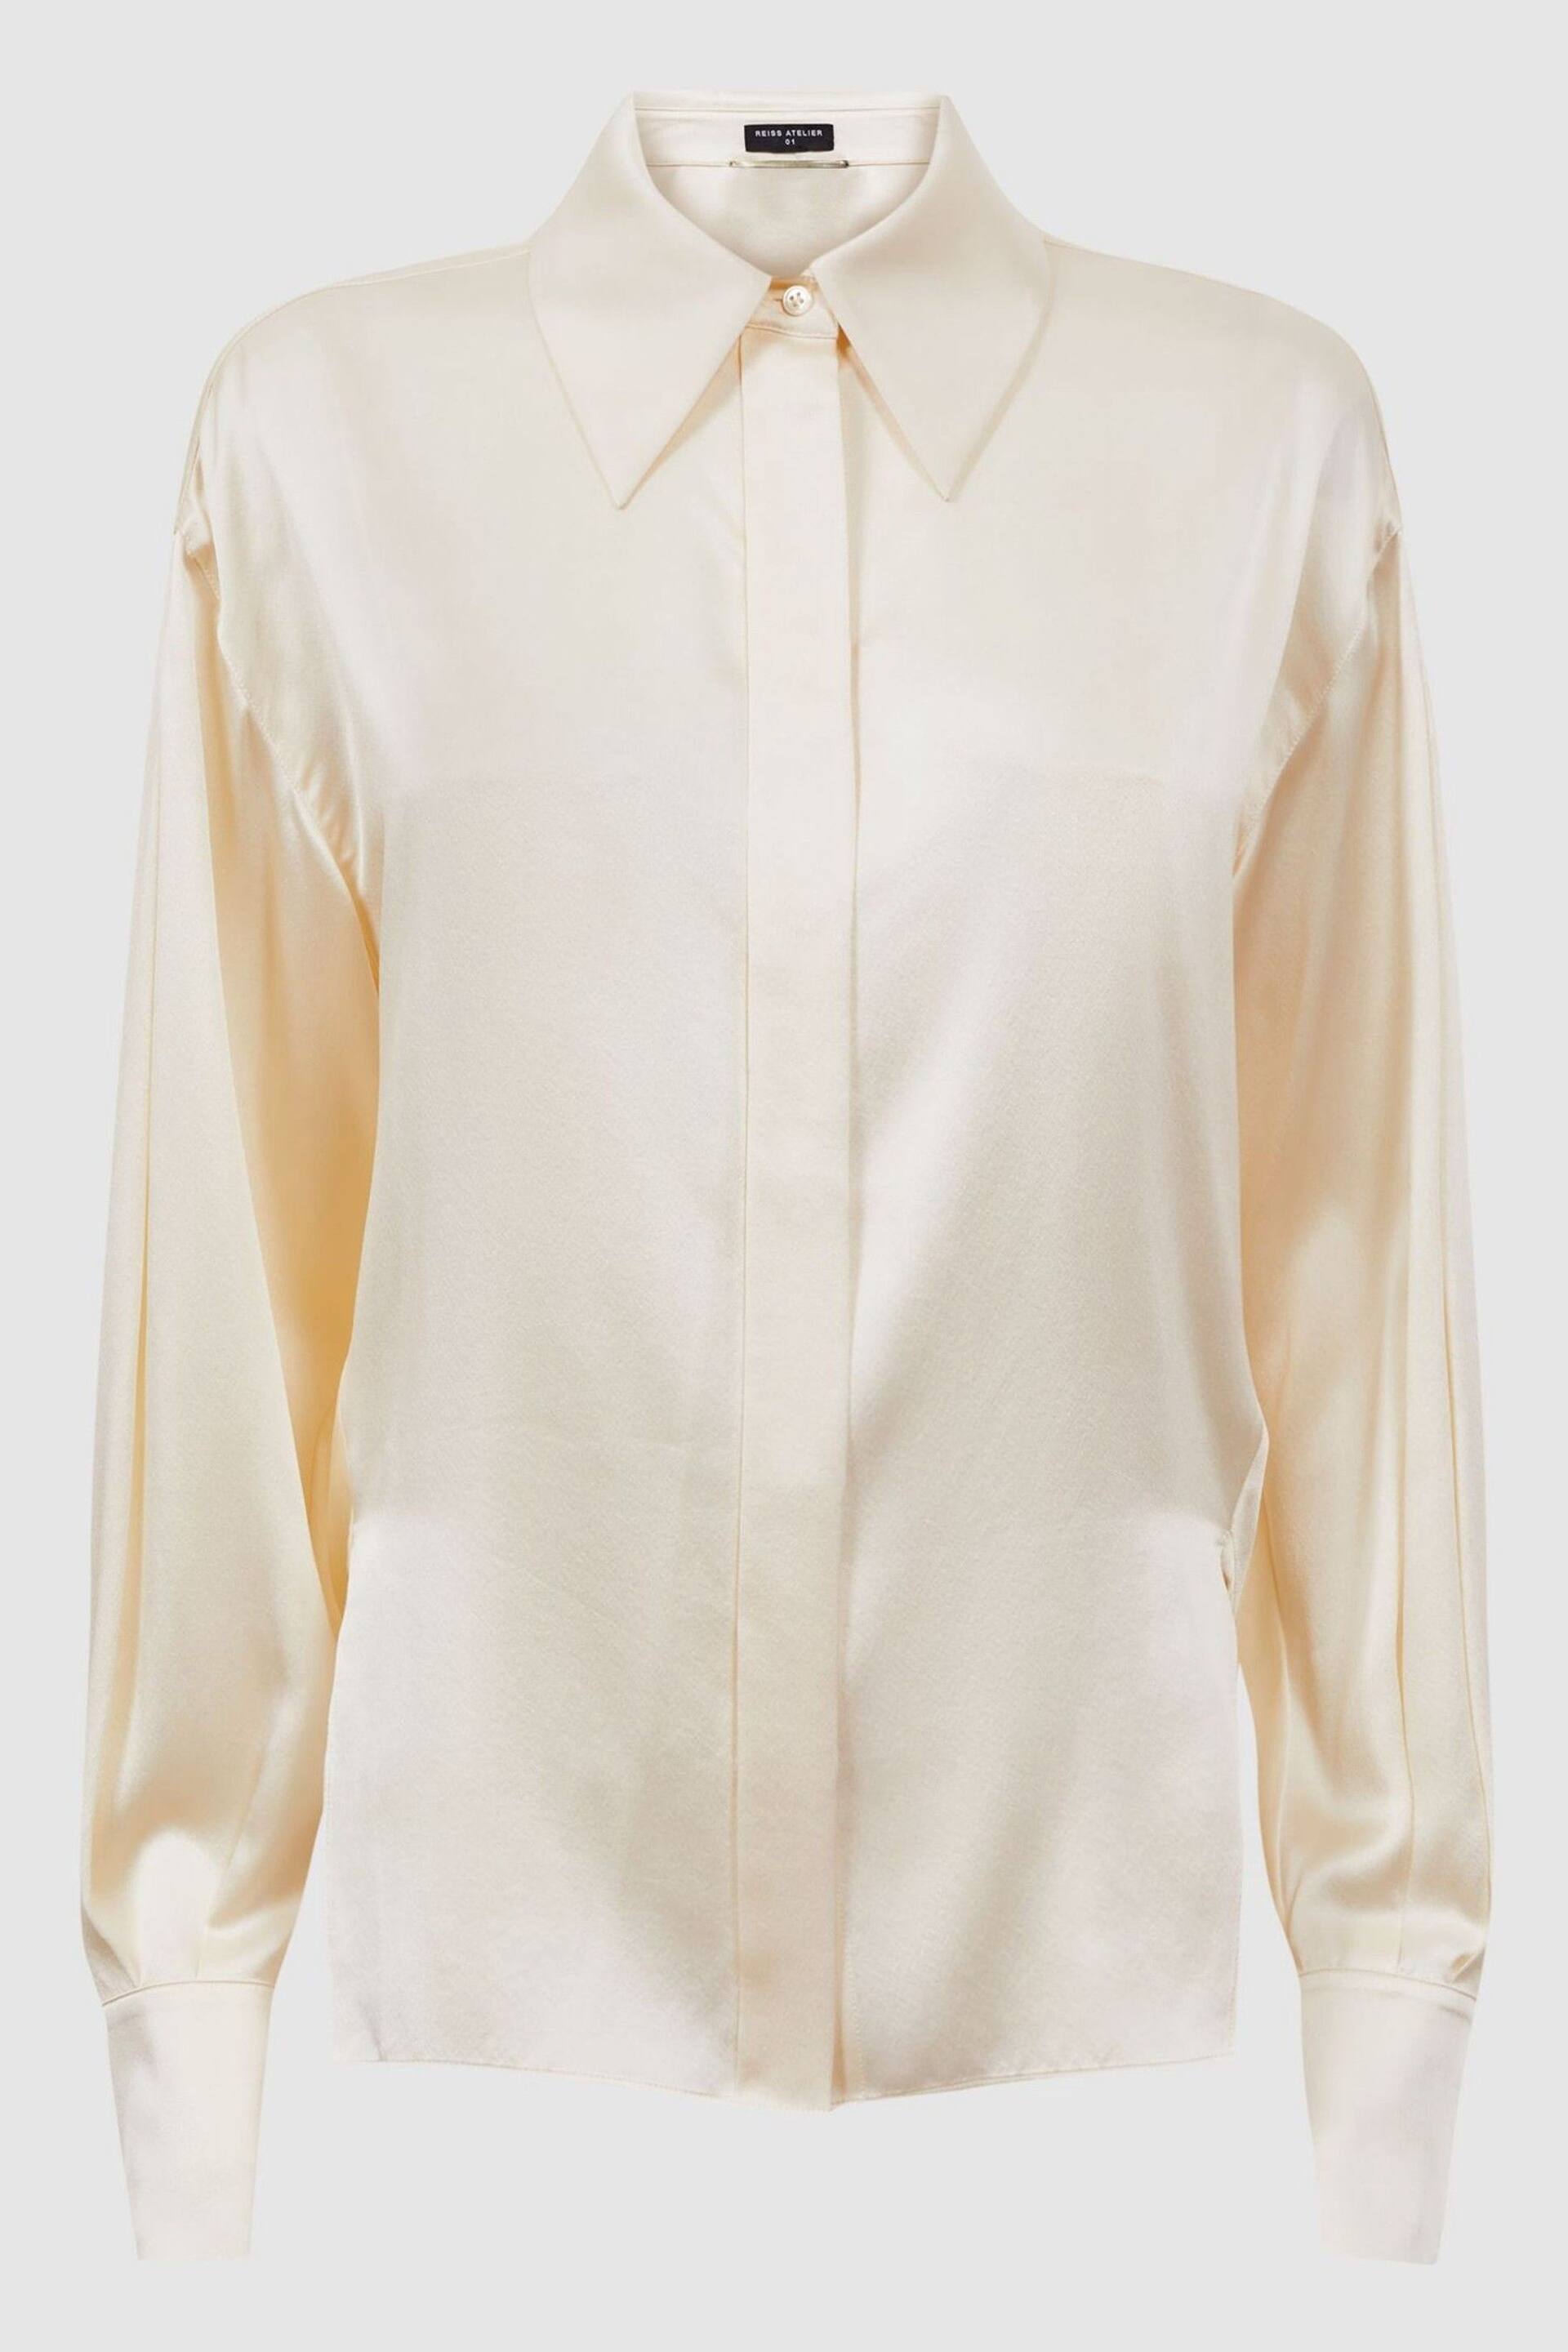 Reiss Cream Fleur Atelier Silk Drape Back Shirt - Image 4 of 5